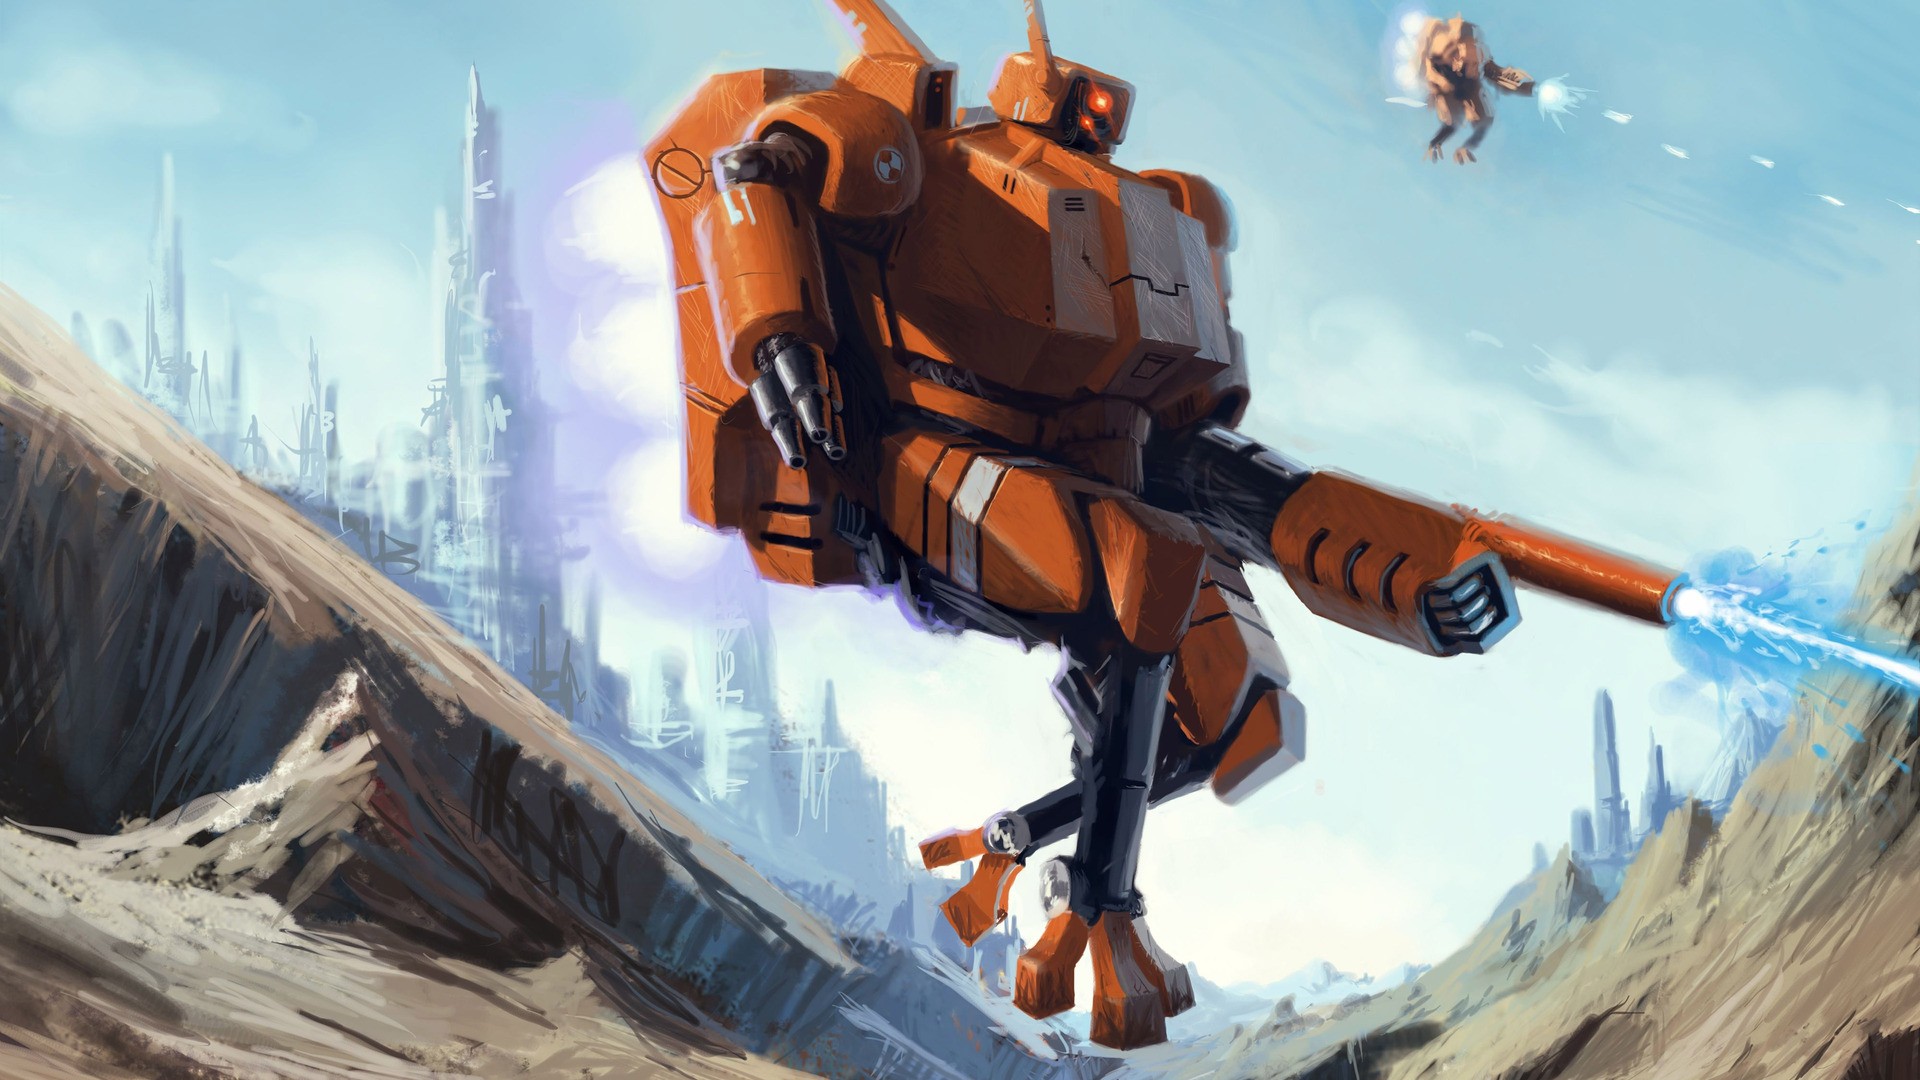 General 1920x1080 robot mechs artwork concept art war Warhammer 40,000 Tau science fiction